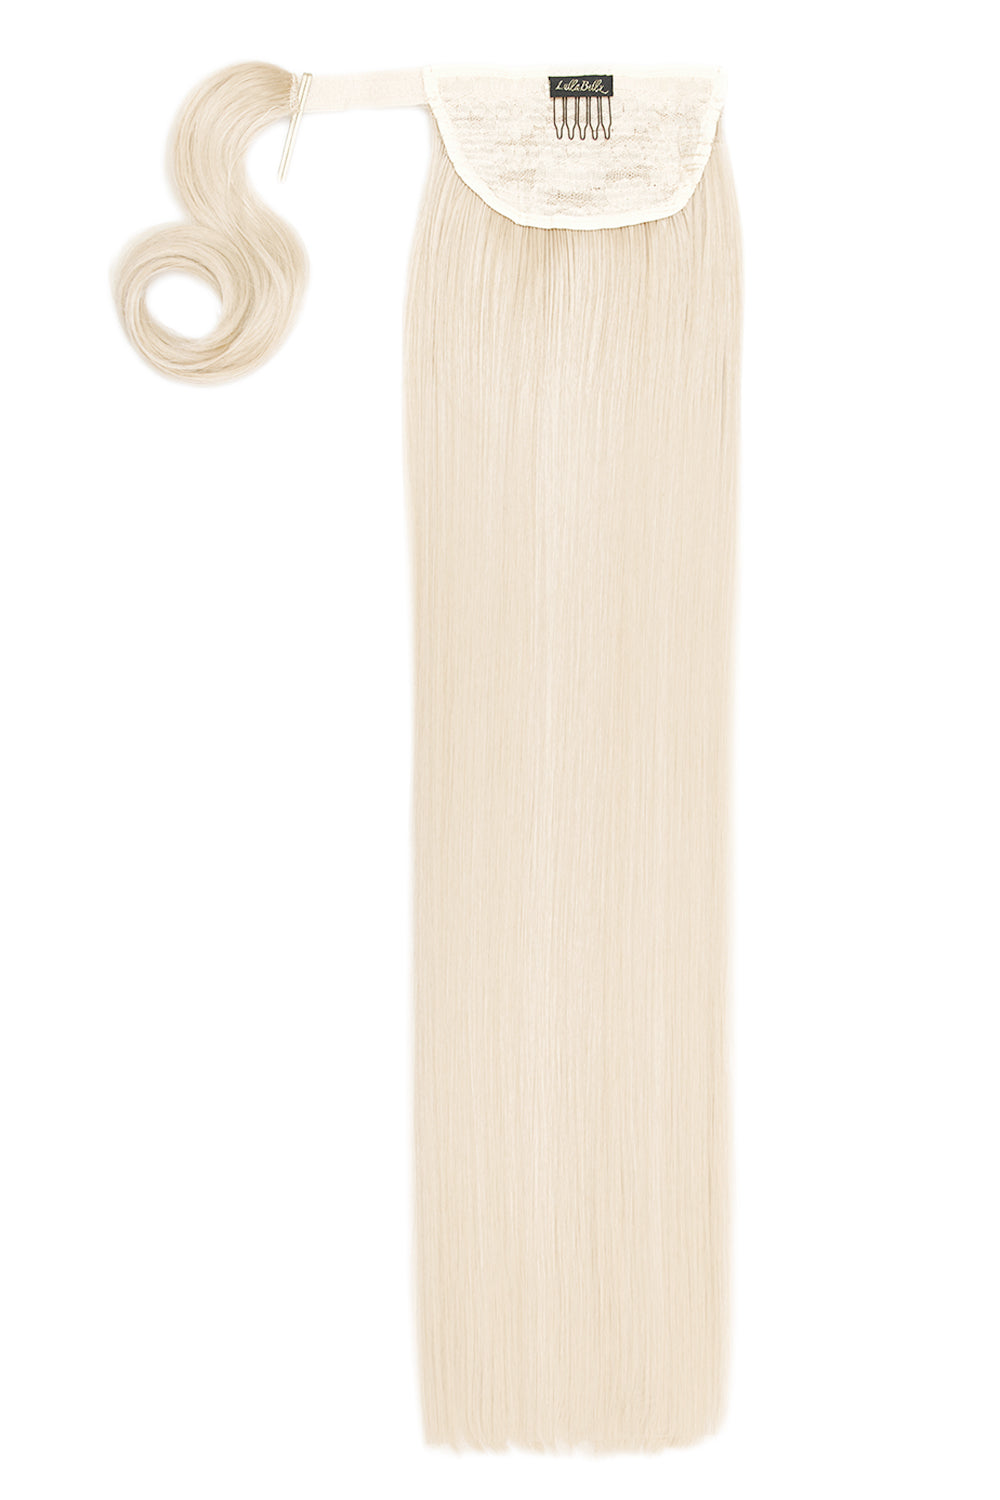 Grande Lengths 26" Straight Wraparound Ponytail - Bleach Blonde